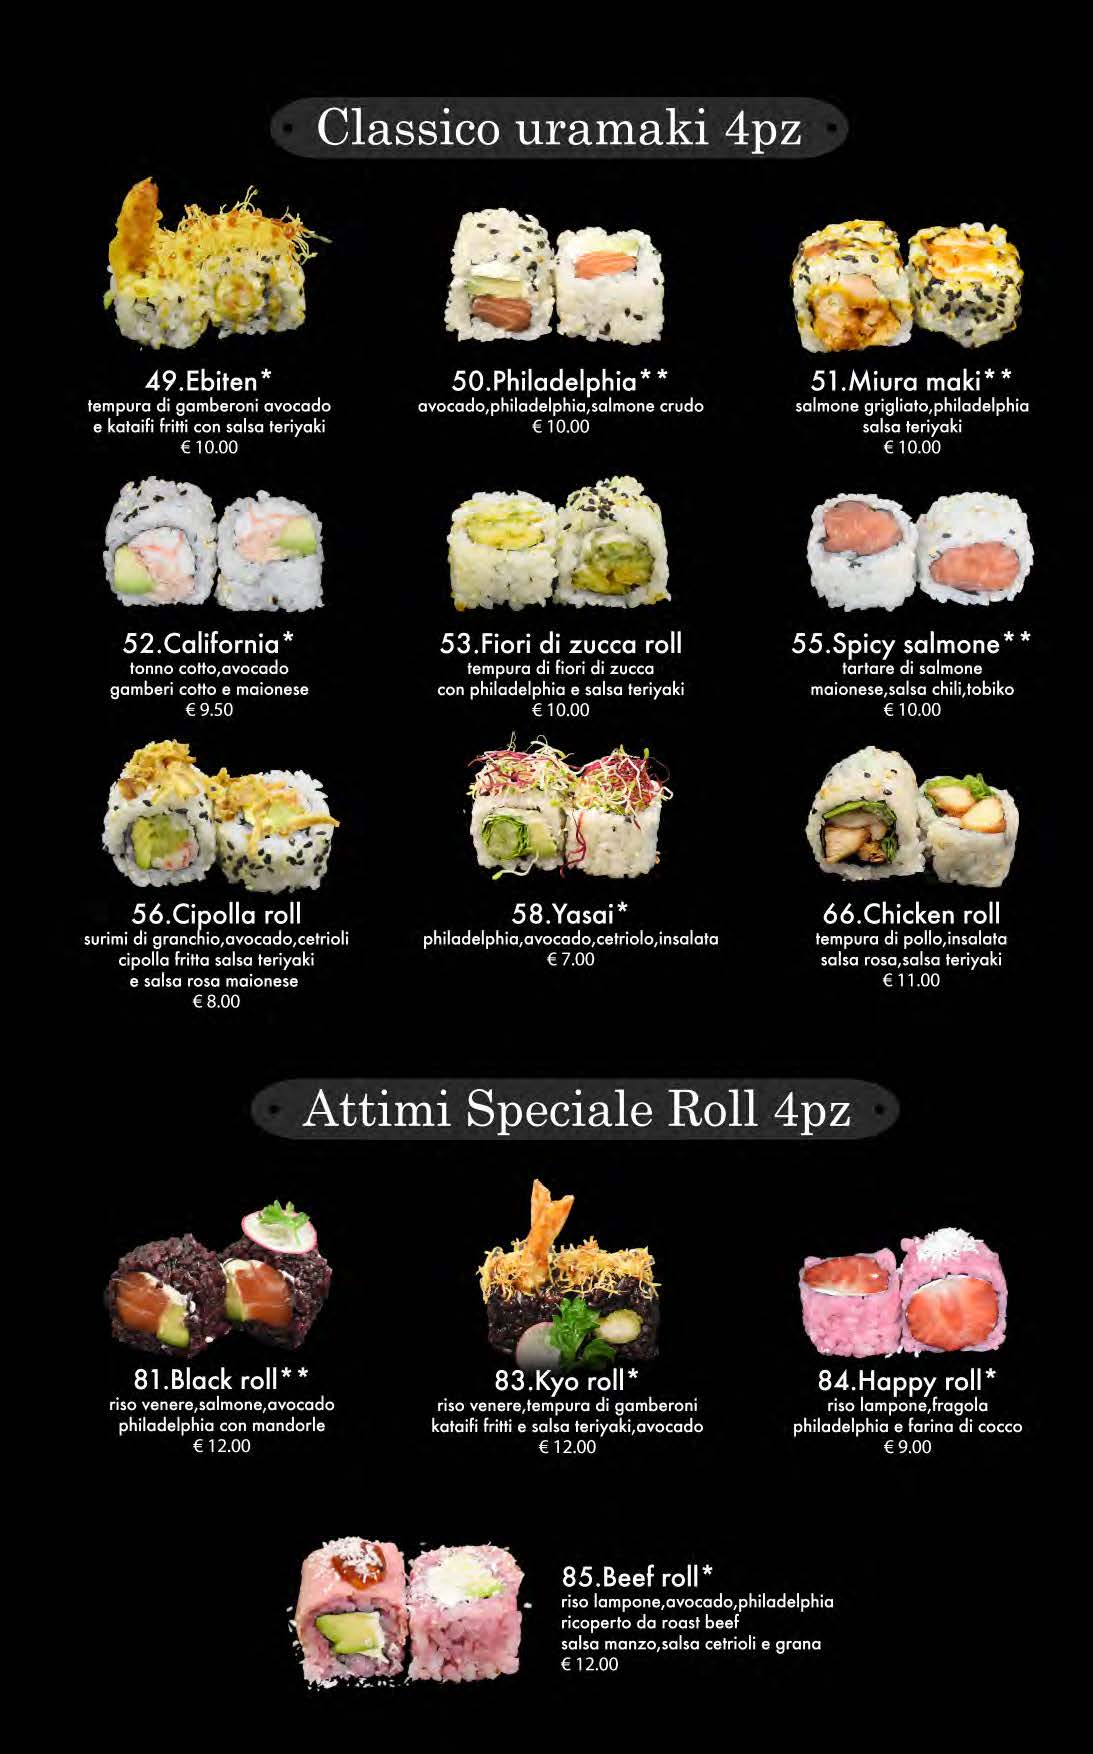 attimi ristorante giapponese padova menù pranzo pagina 05 uramaki speciale roll